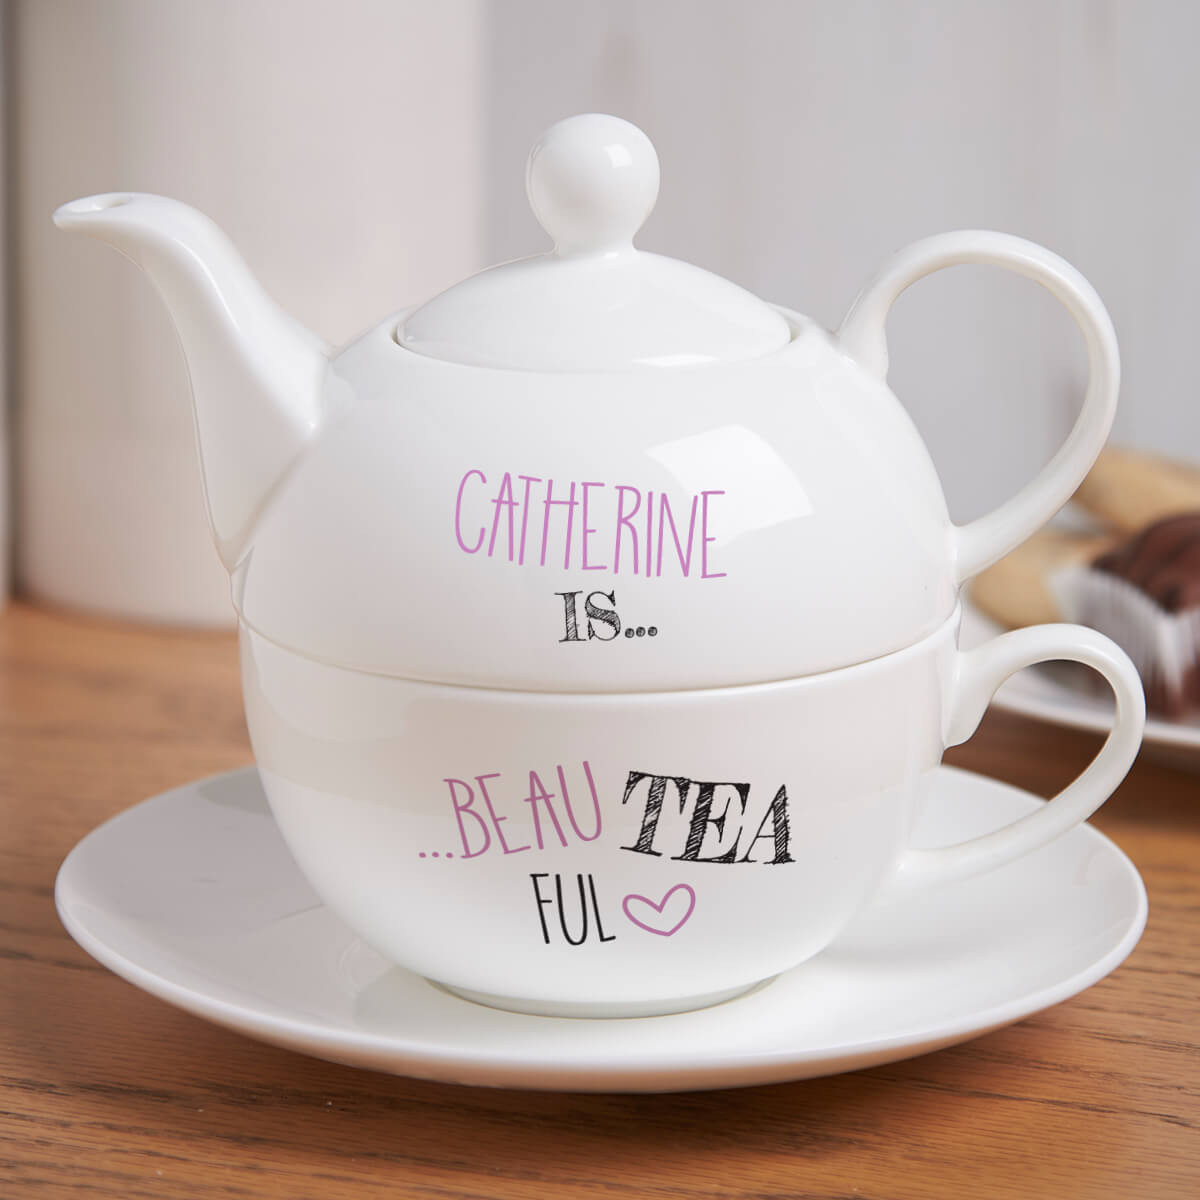 personalised Beau Tea Ful Tea For One Teapot